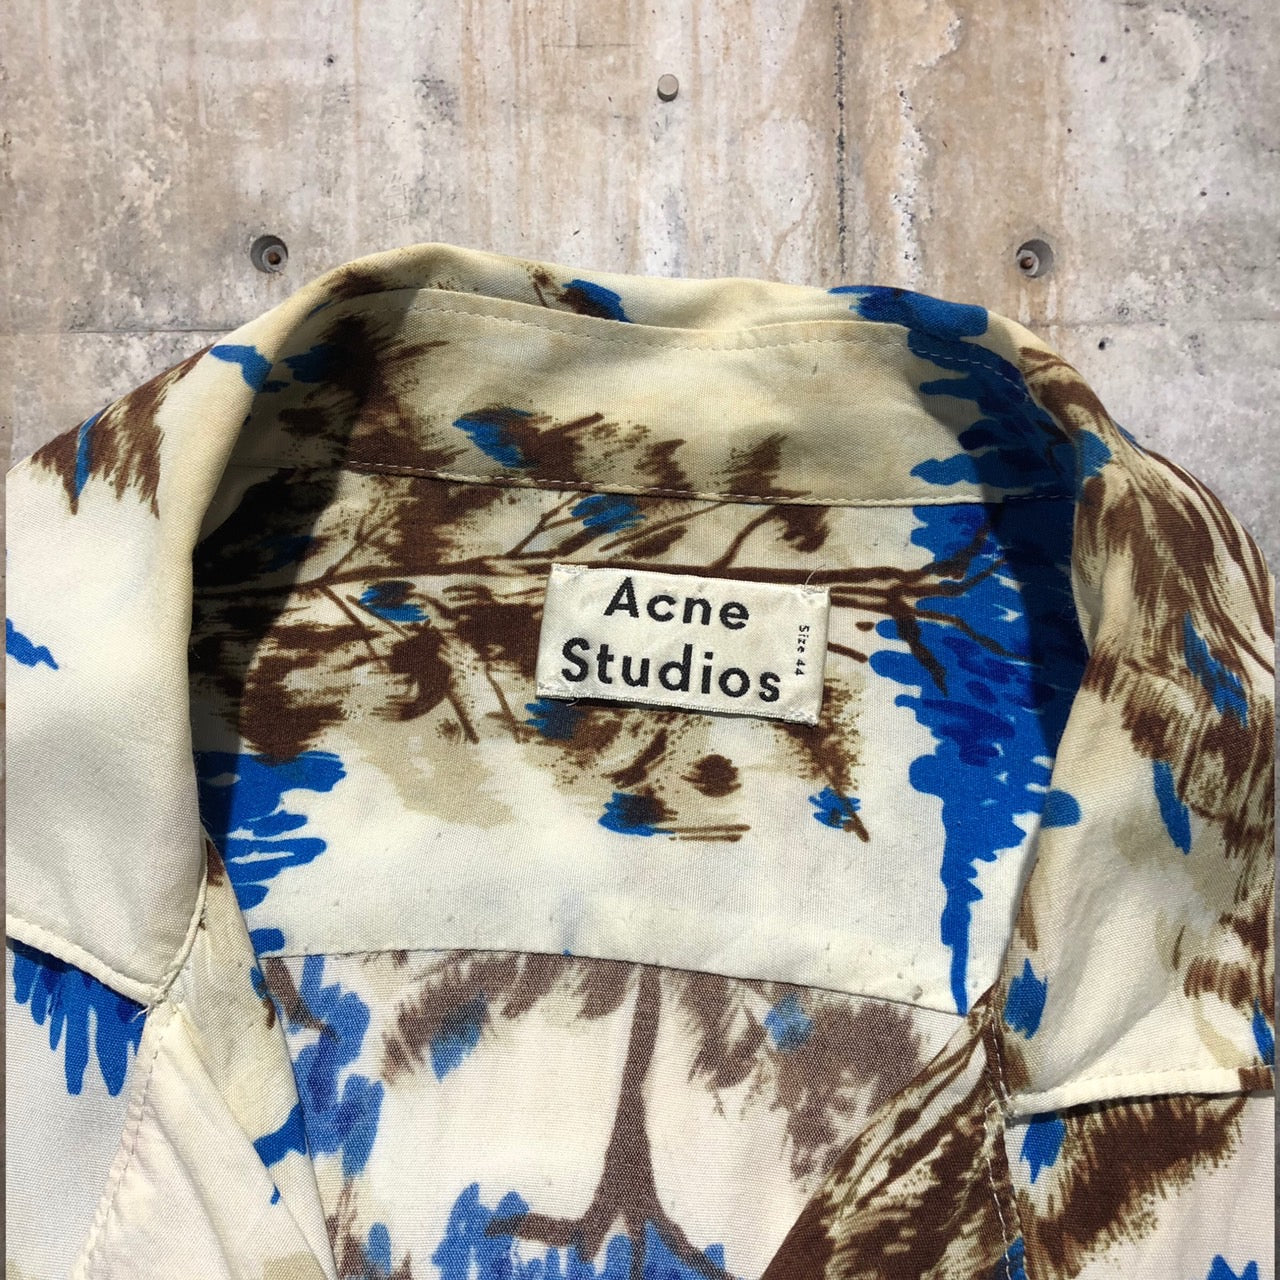 Acne Studios(アクネストゥディオズ) 19SS Simon Pine Flu Vacation Shirt/半袖シャツ  1159-343-7050 44(Mサイズ程度) ホワイト